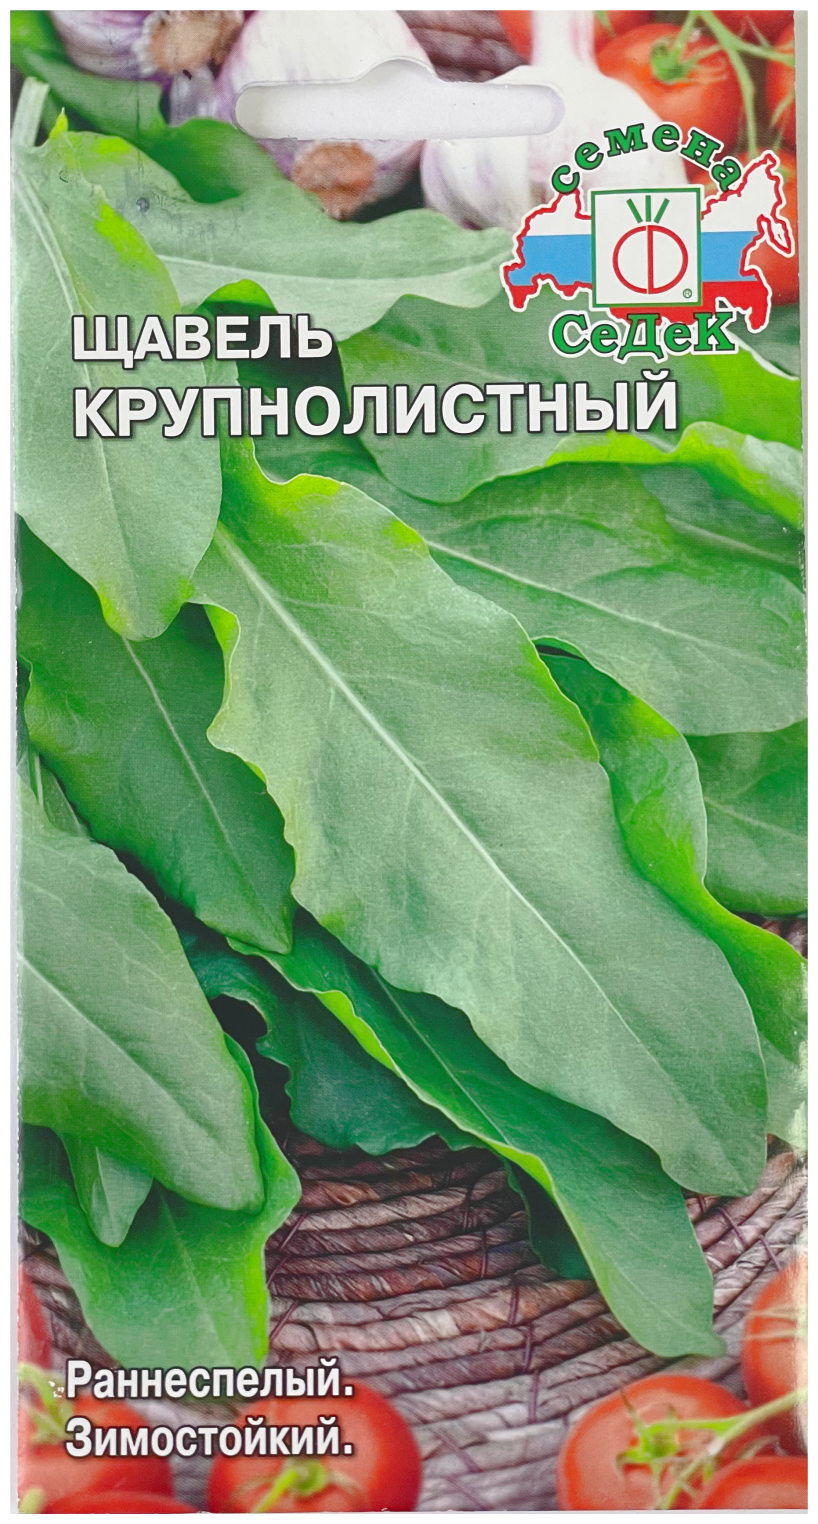 Семена щавель Крупнолистный 0.5 г, + 2 подарка — купить в интернет-магазинепо низкой цене на Яндекс Маркете